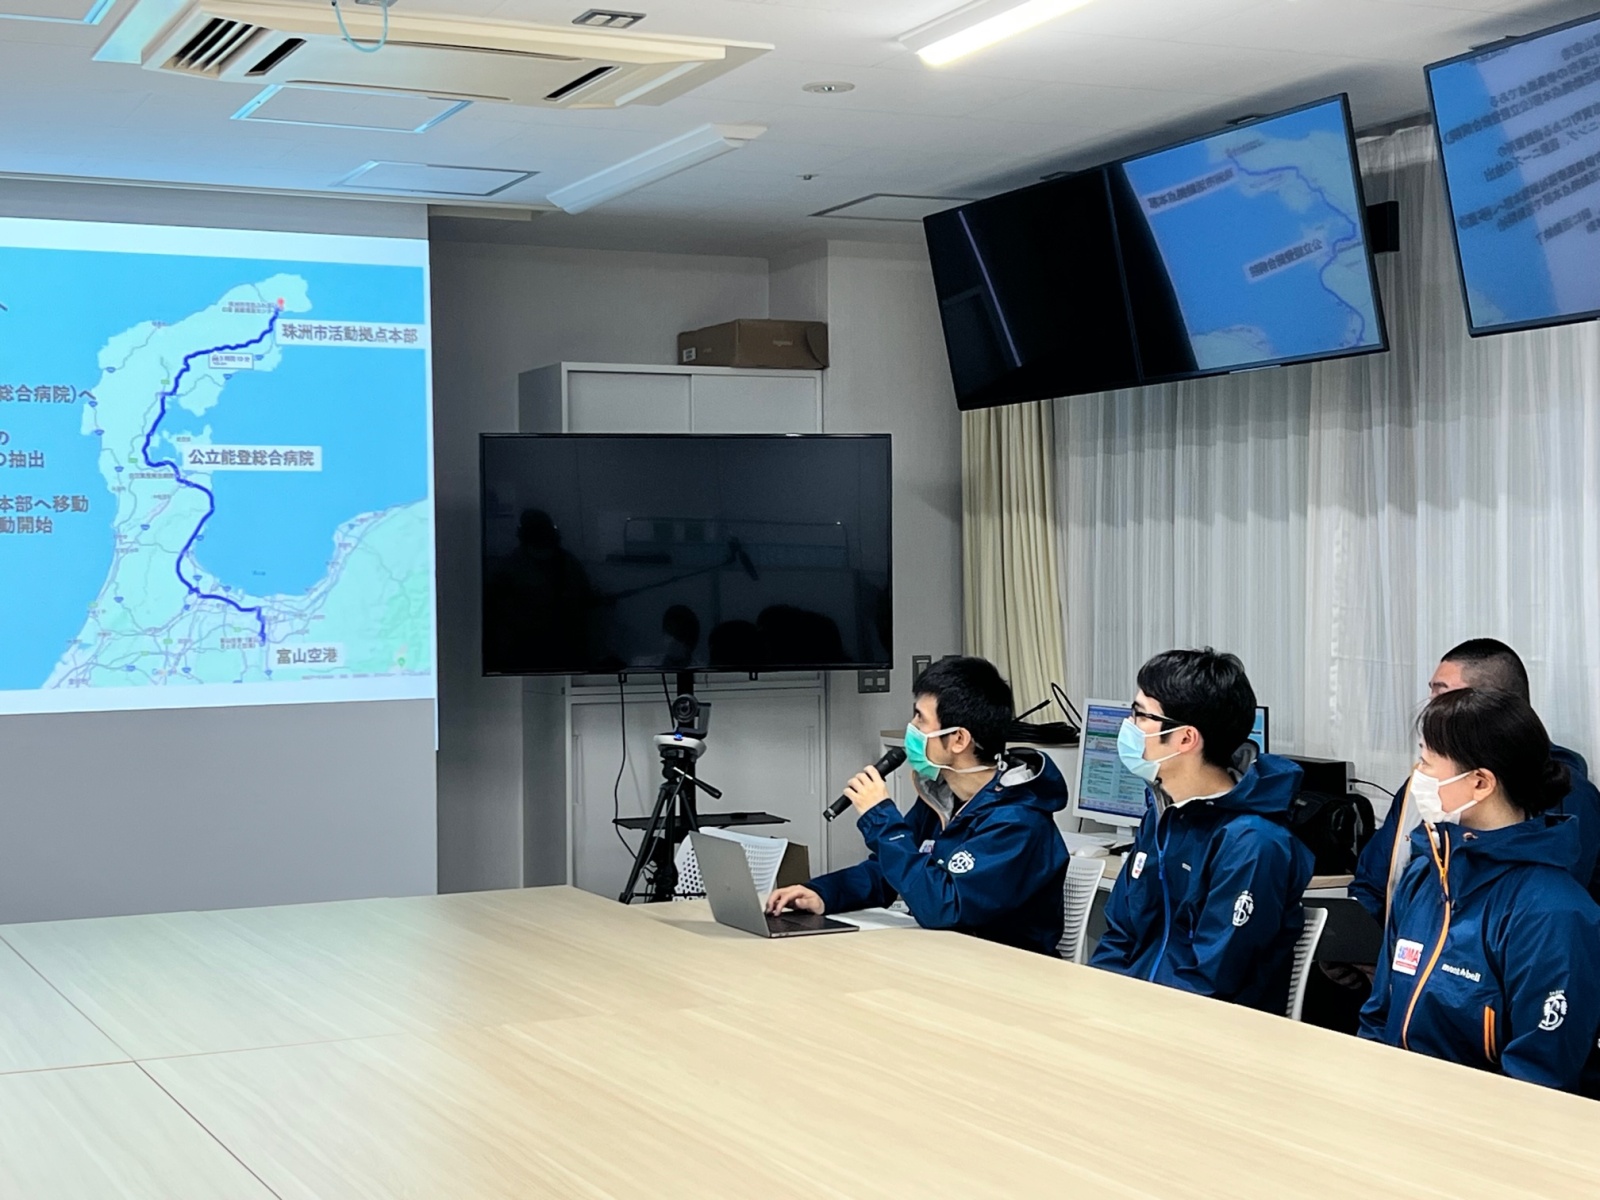 札幌医科大学災害派遣医療チームDMATによる派遣報告会の様子